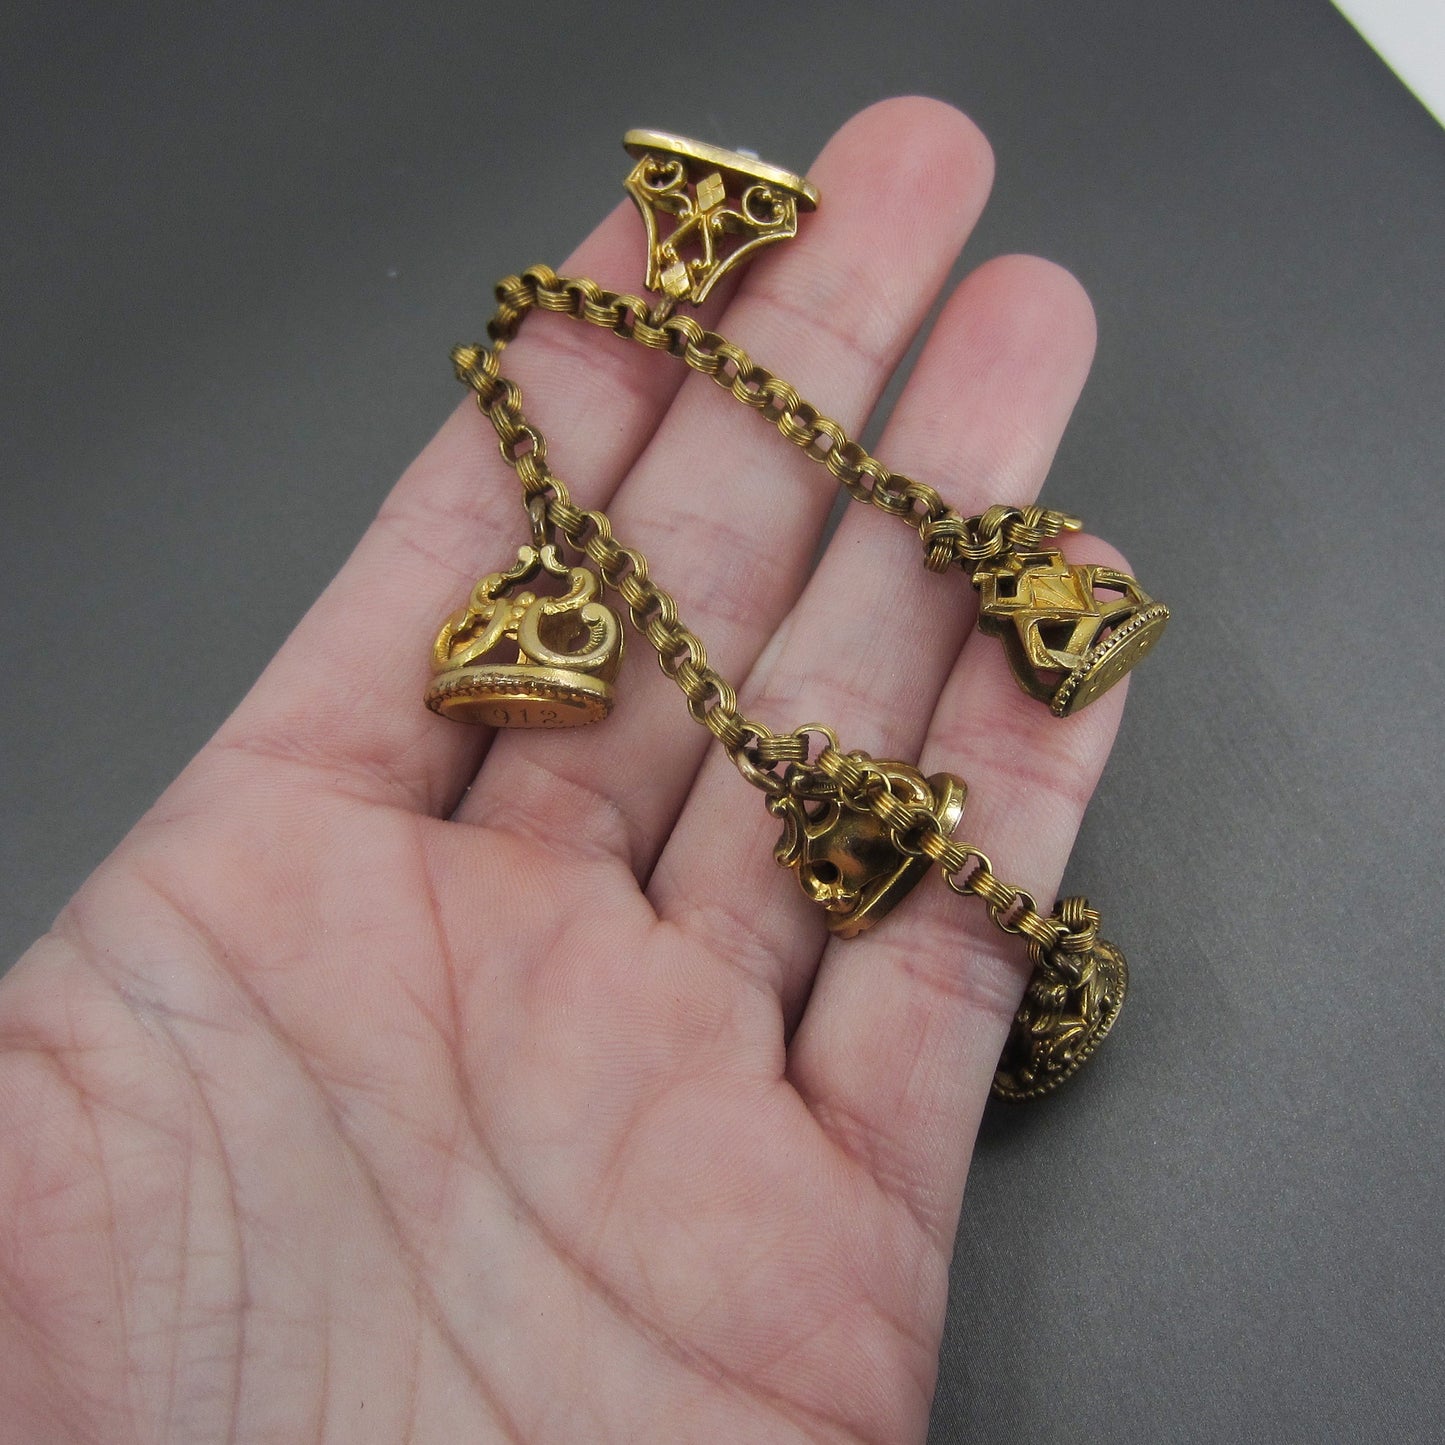 SOLD-Antique Seal Fob Charm Bracelet Gold-Filled c. 1900